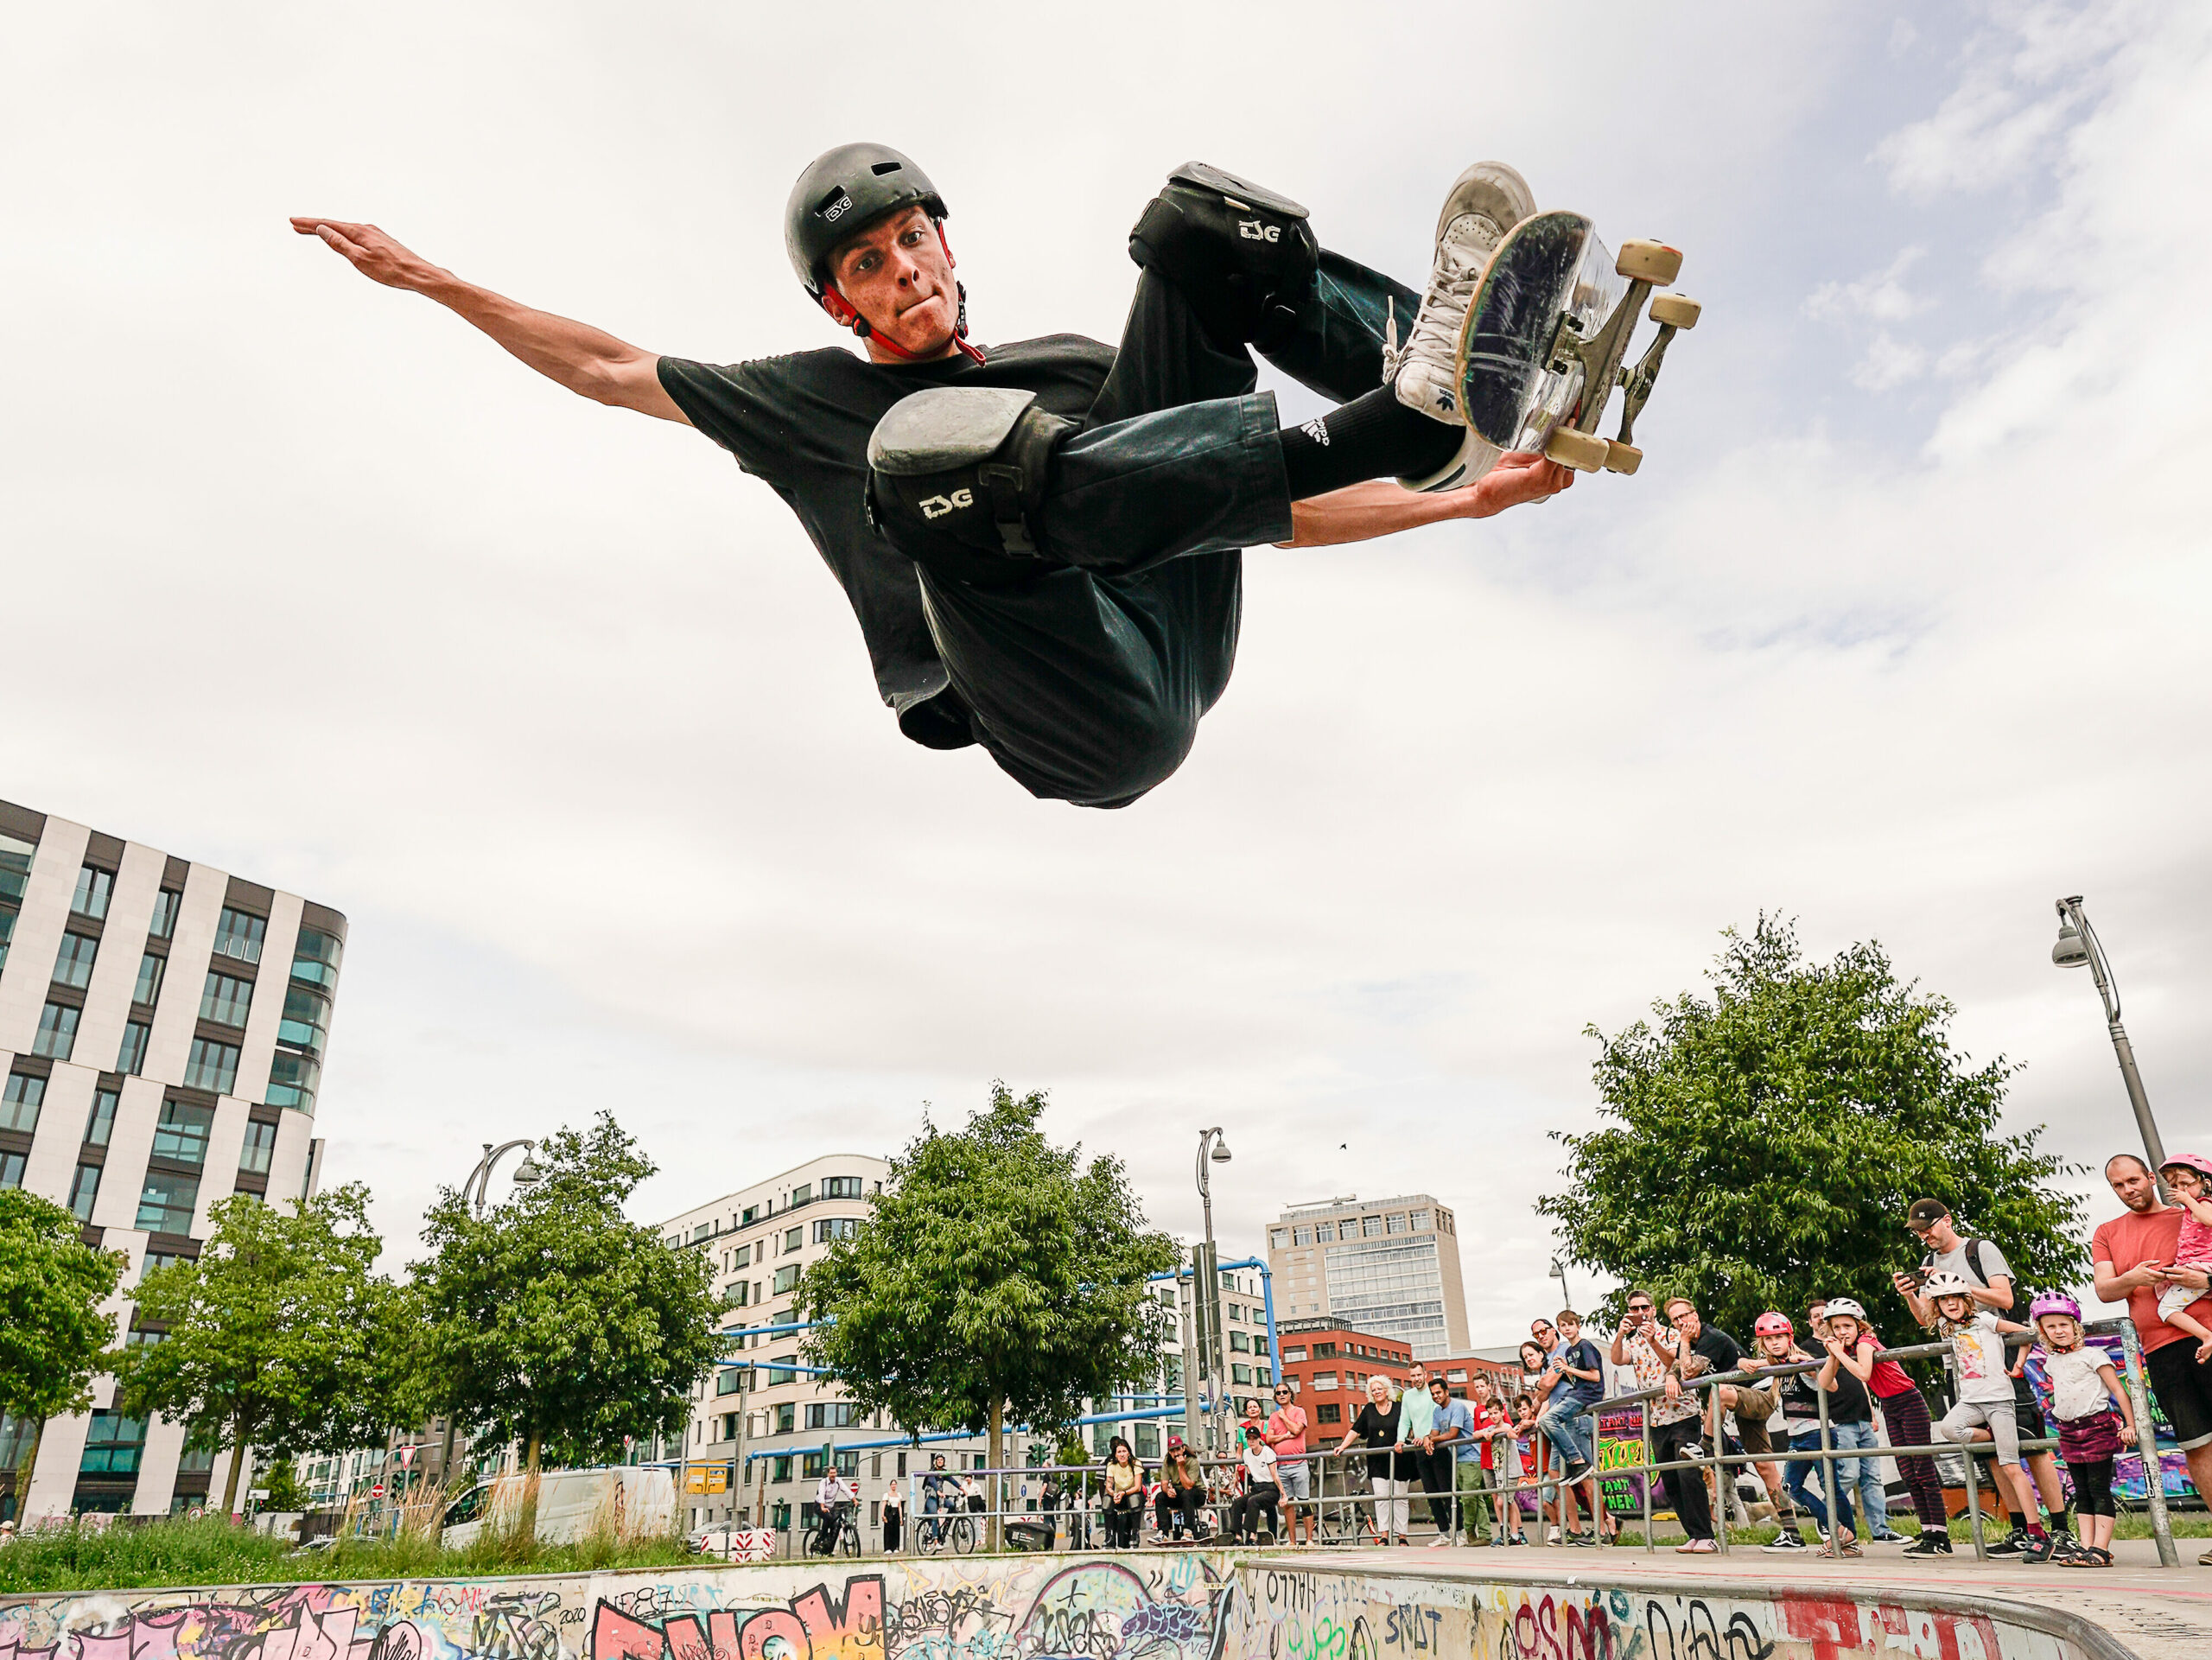 Ein Skateboarder springt sehr hoch aus einer Bowl und hält das Skateboard unter ihm fest während er in der luft schwebt.